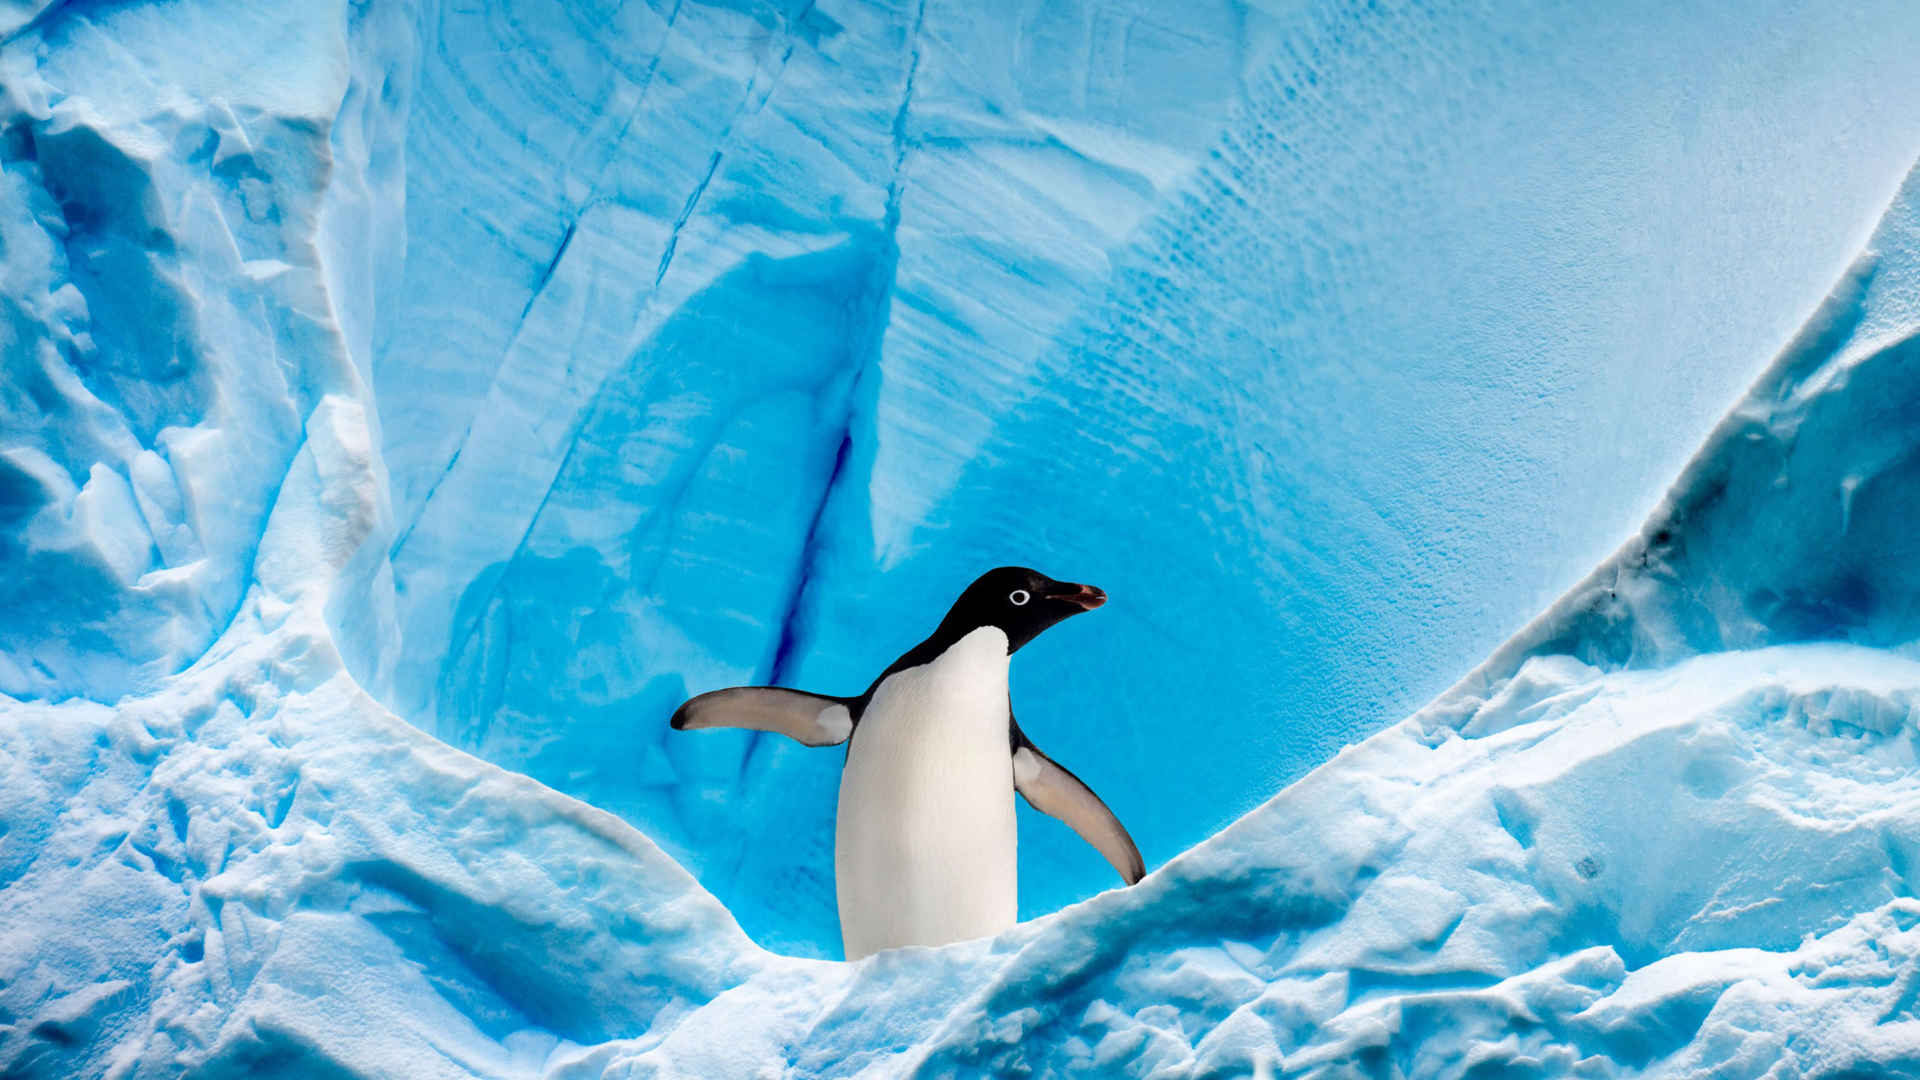 极地企鹅一个人呆着很舒心图片-